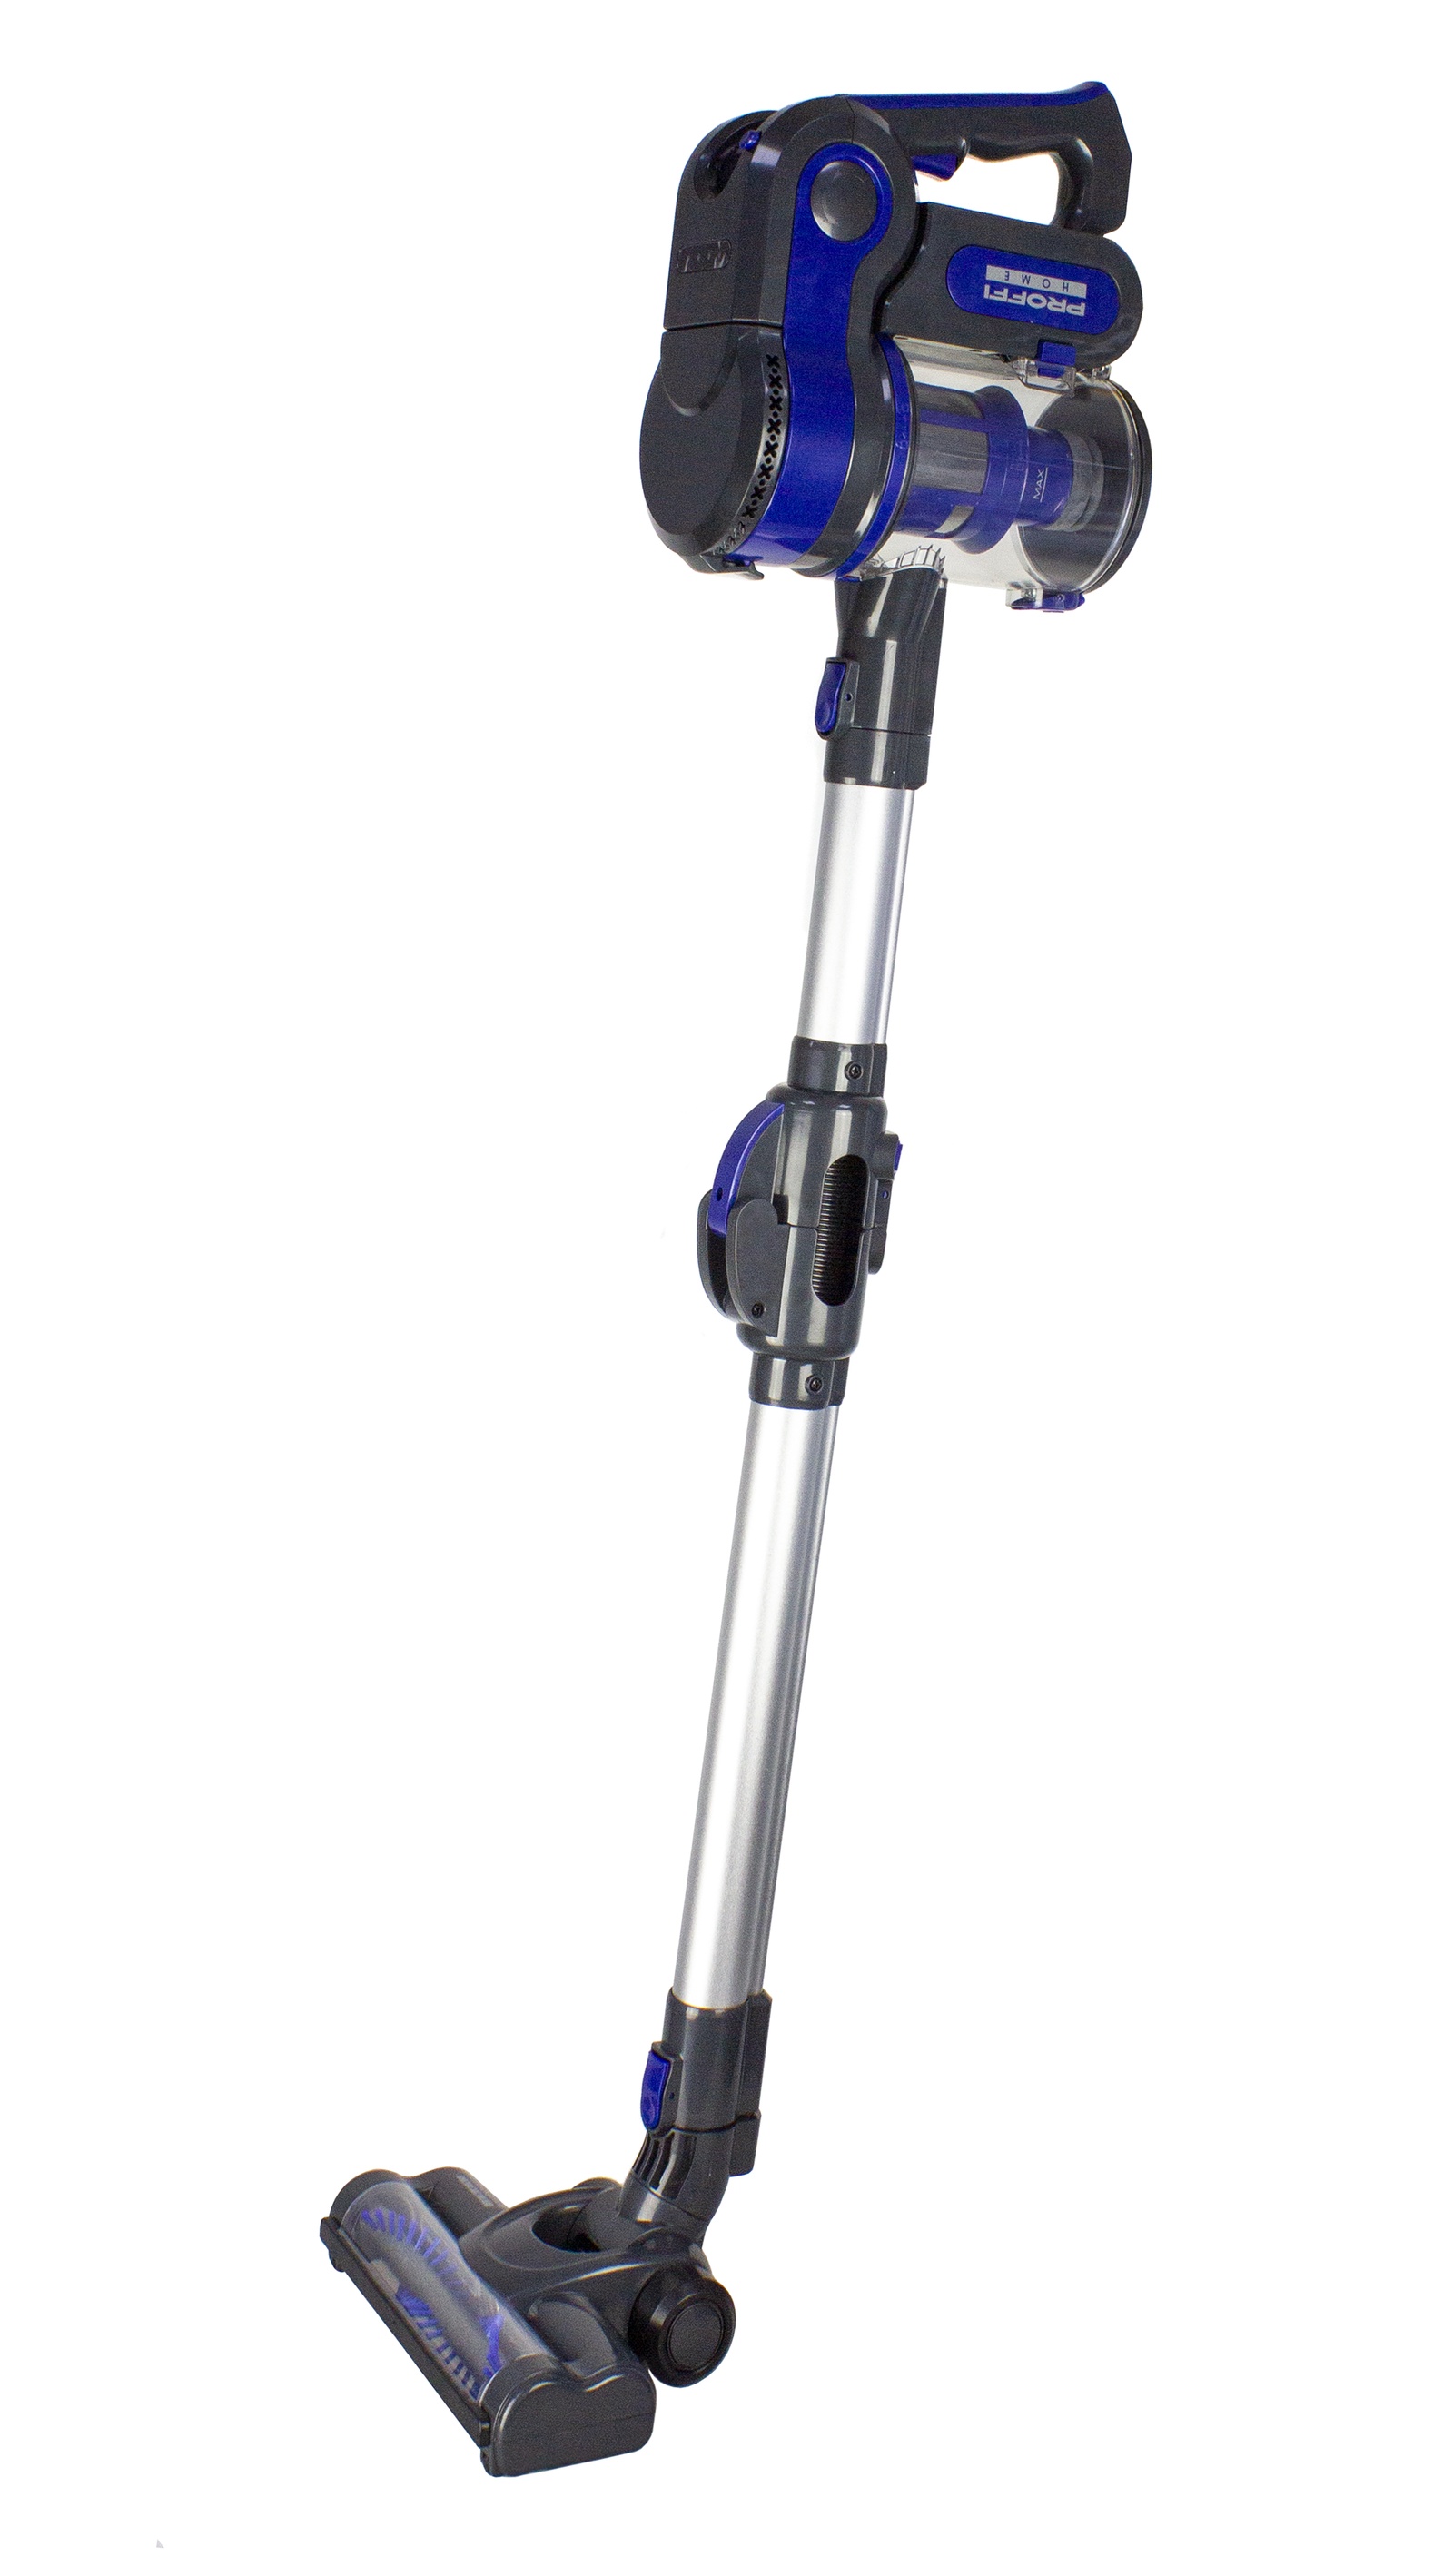 фото Пылесос Proffi Home Smart Stick PH8816 с гибкой телескопической трубкой и электротурбощеткой, безмешковый, беспроводной 2-в-1, вертикальный, фиолетовый